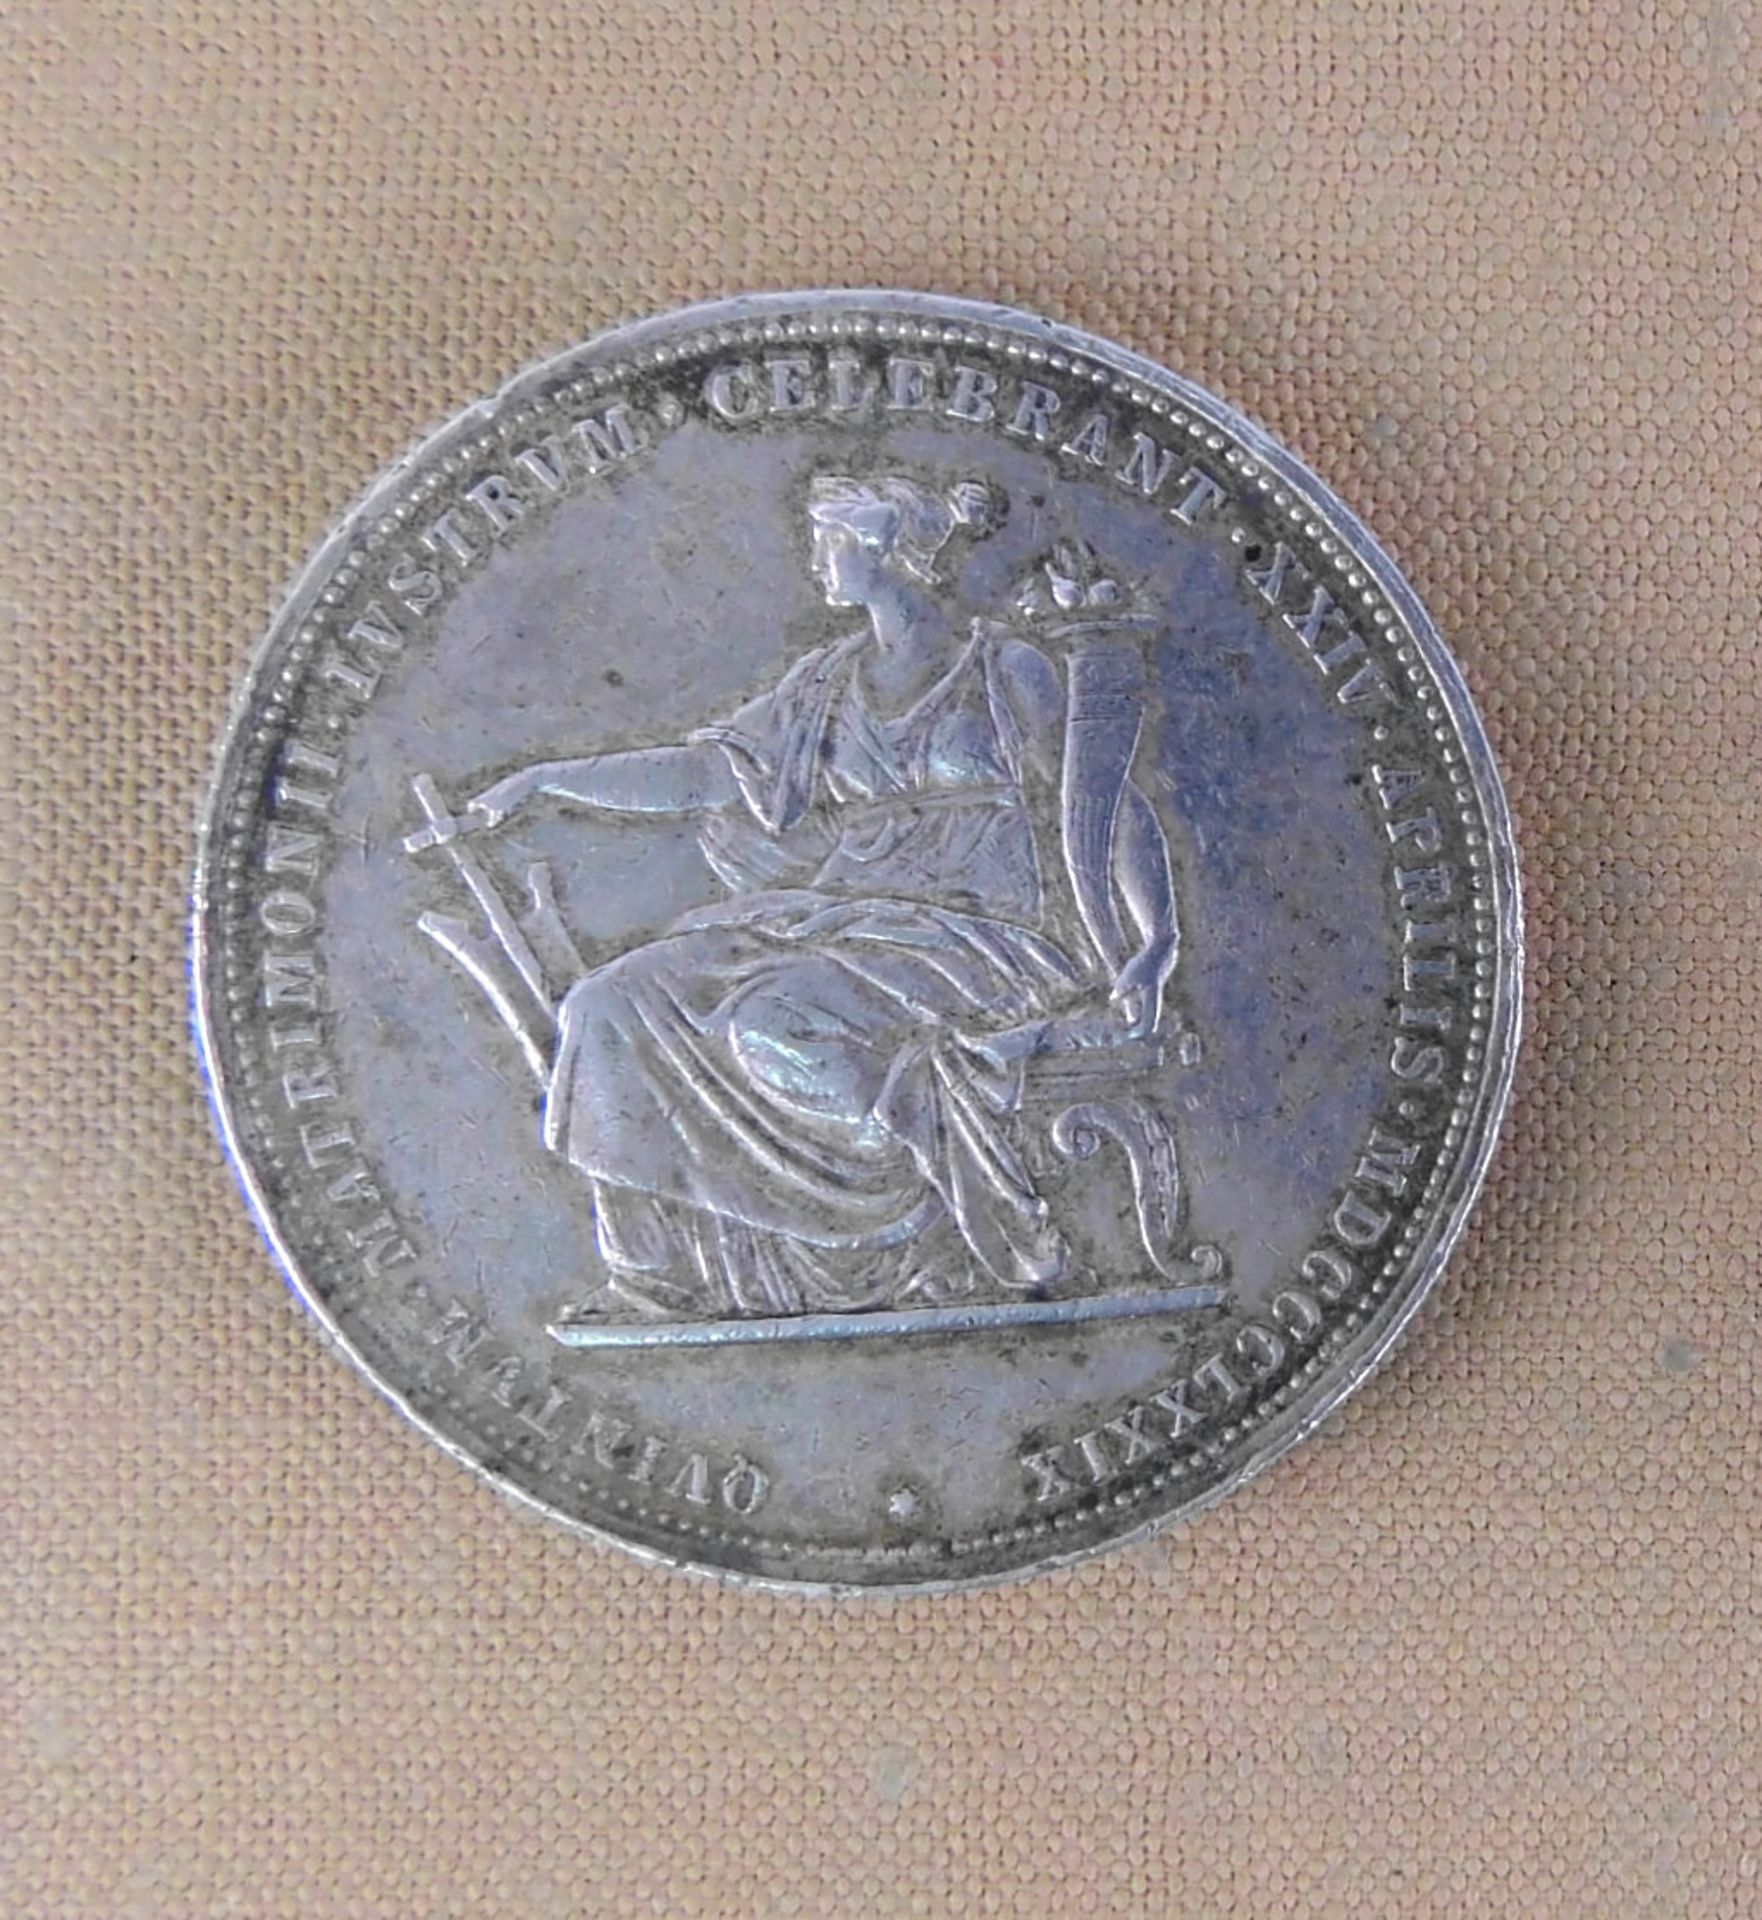 Silbermünze, 2 Gulden Österreich 1879 Silberhochzeit Kaiser Franz Joseph I./ Elisabeth - Bild 2 aus 2